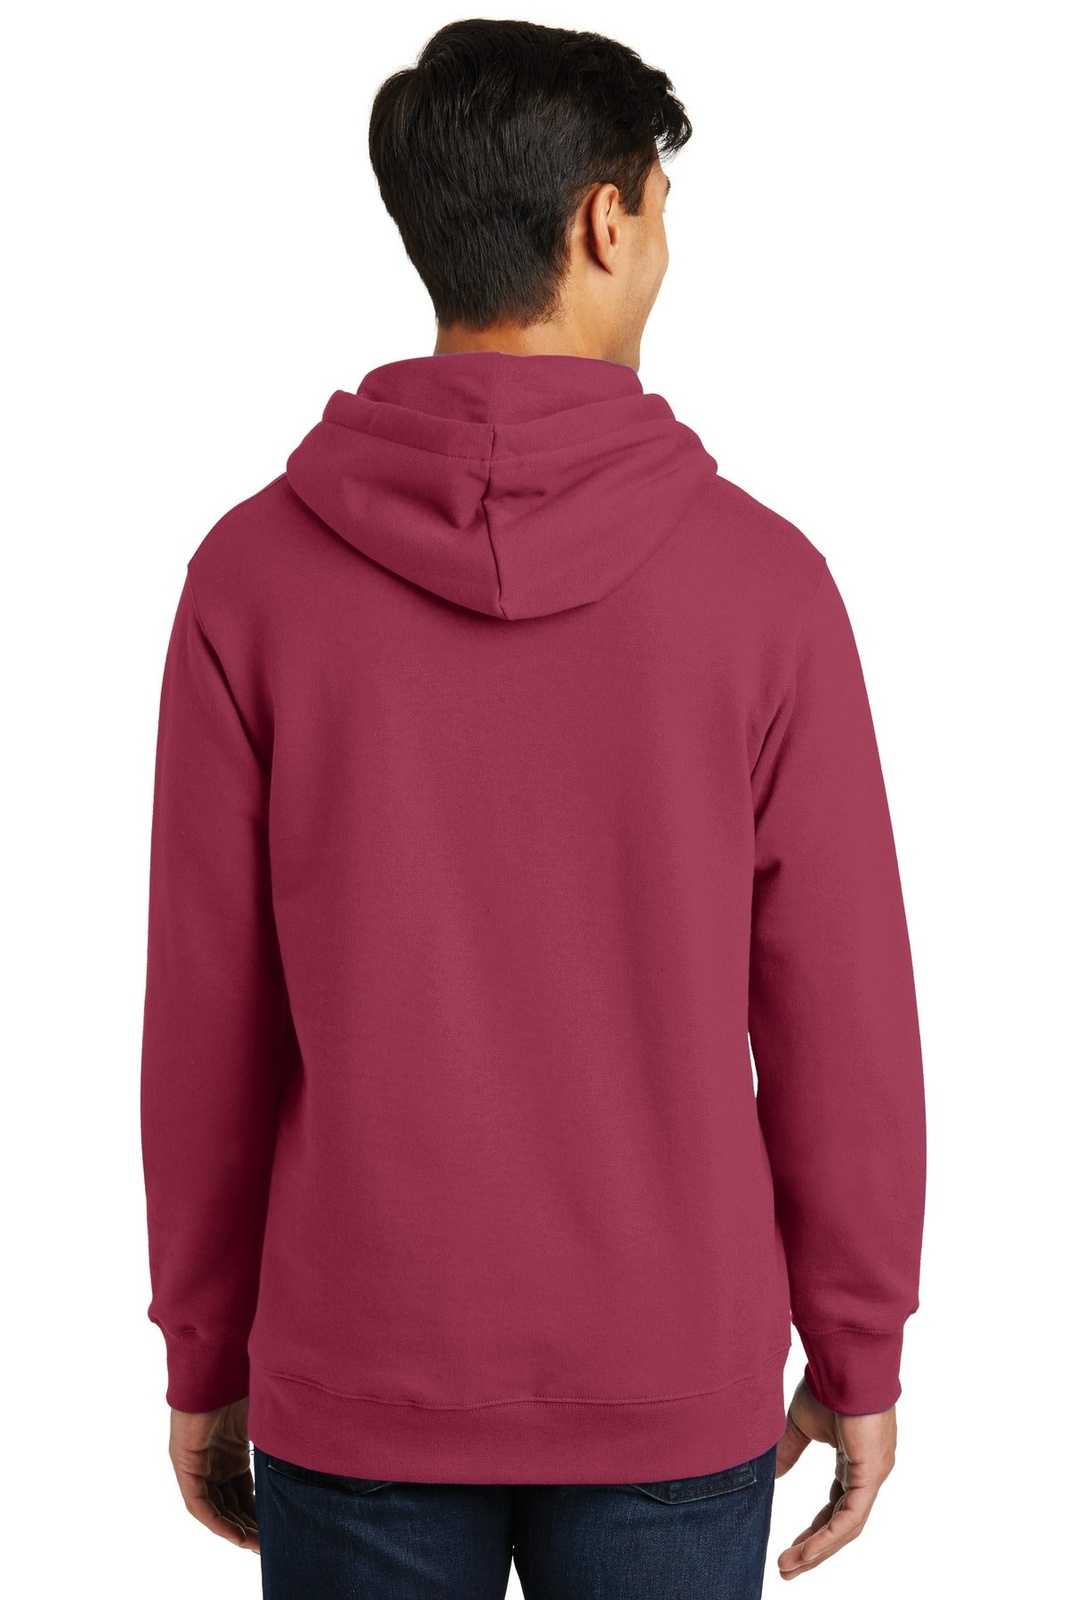 Port & Company PC850H Fan Favorite Fleece Pullover Hooded Sweatshirt - Garnet - HIT a Double - 1